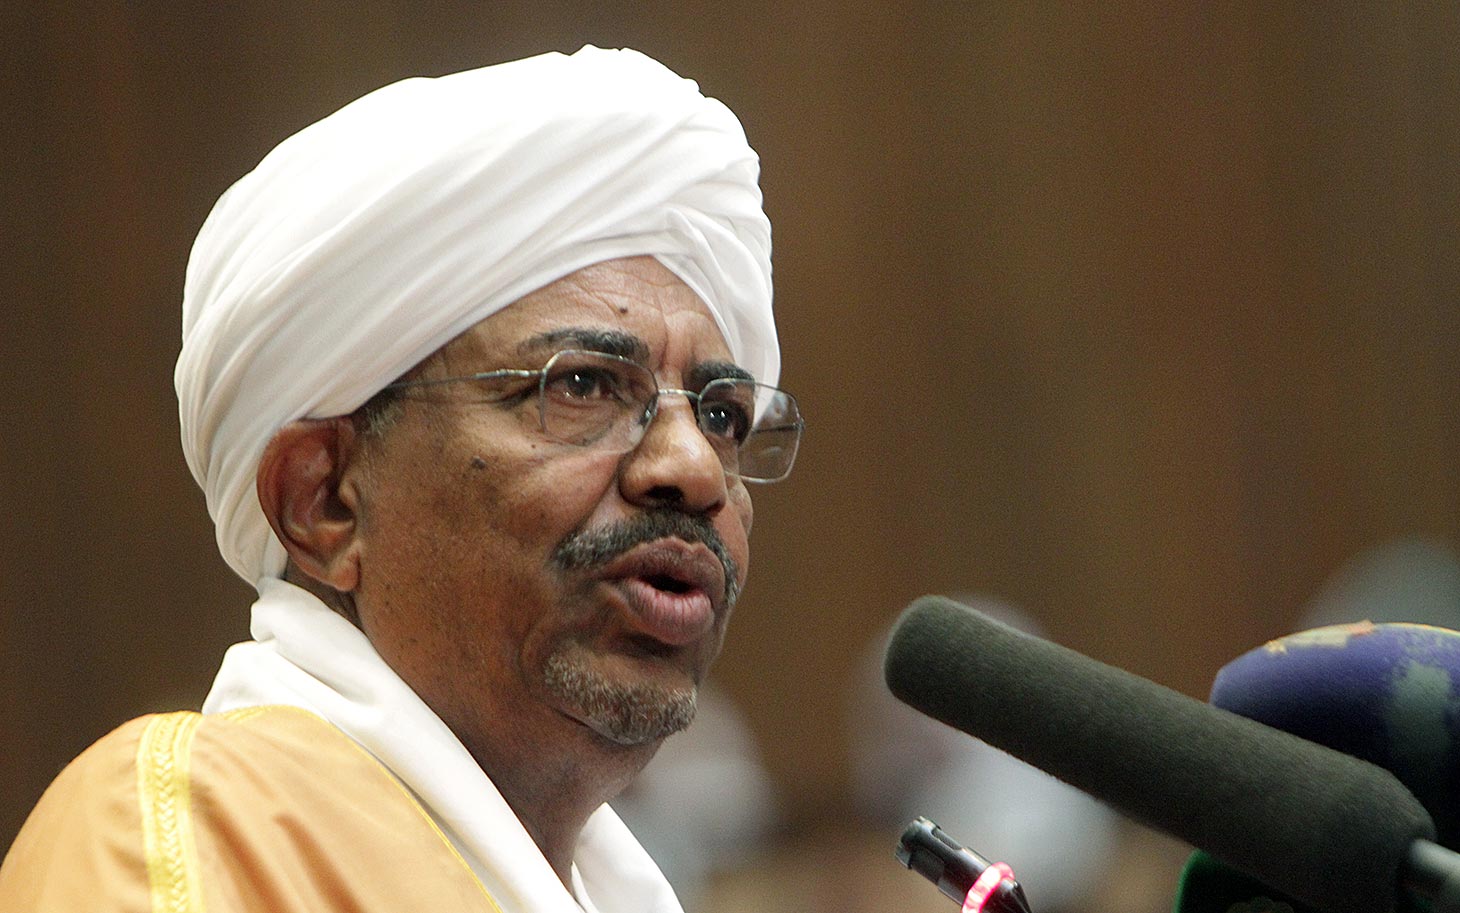 الرئيس السوداني يعين نائبا له ورئيسا للوزراء صدى الإعلام 2019 02 23